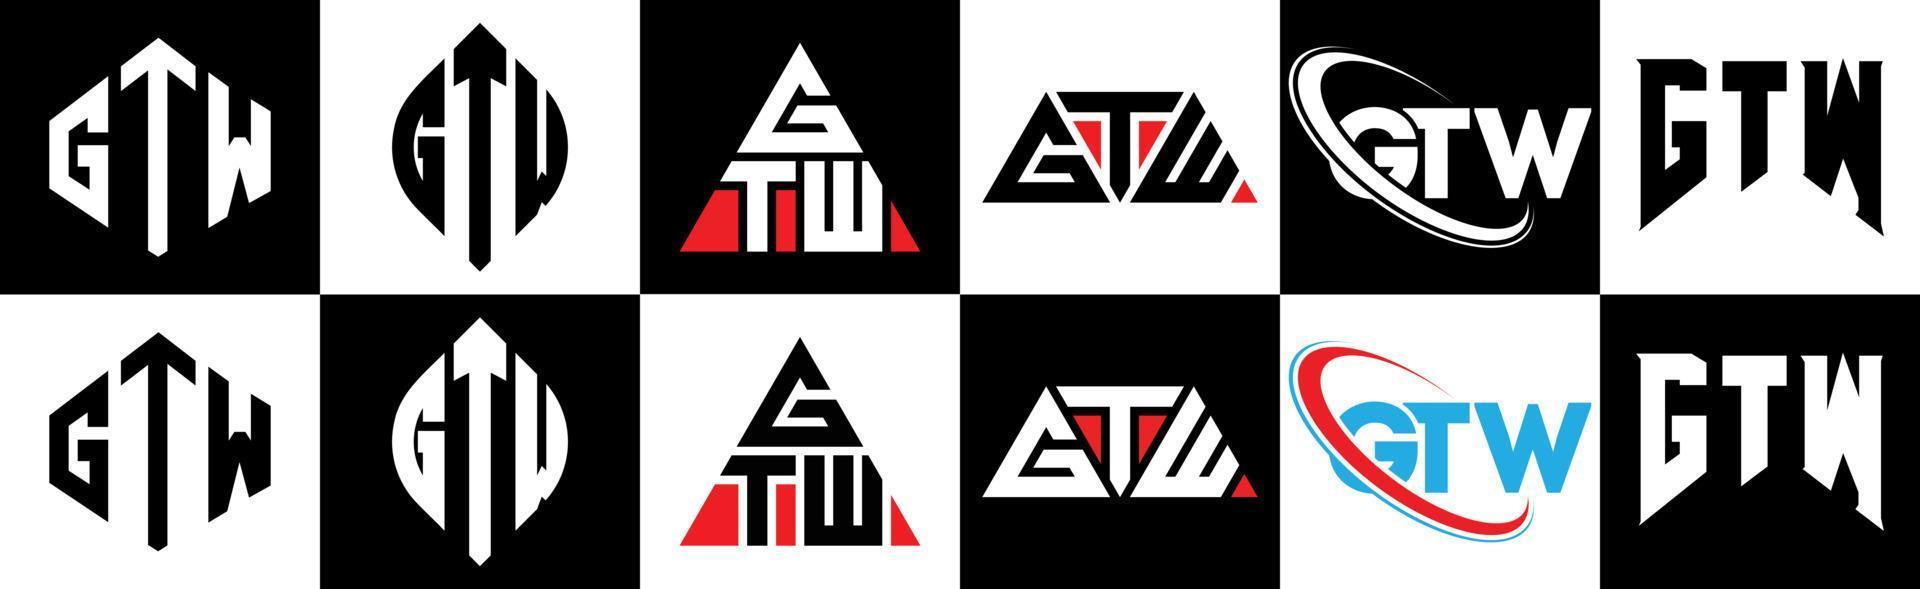 gtw-Buchstaben-Logo-Design in sechs Stilen. gtw Polygon, Kreis, Dreieck, Sechseck, flacher und einfacher Stil mit schwarz-weißem Buchstabenlogo in einer Zeichenfläche. gtw minimalistisches und klassisches Logo vektor